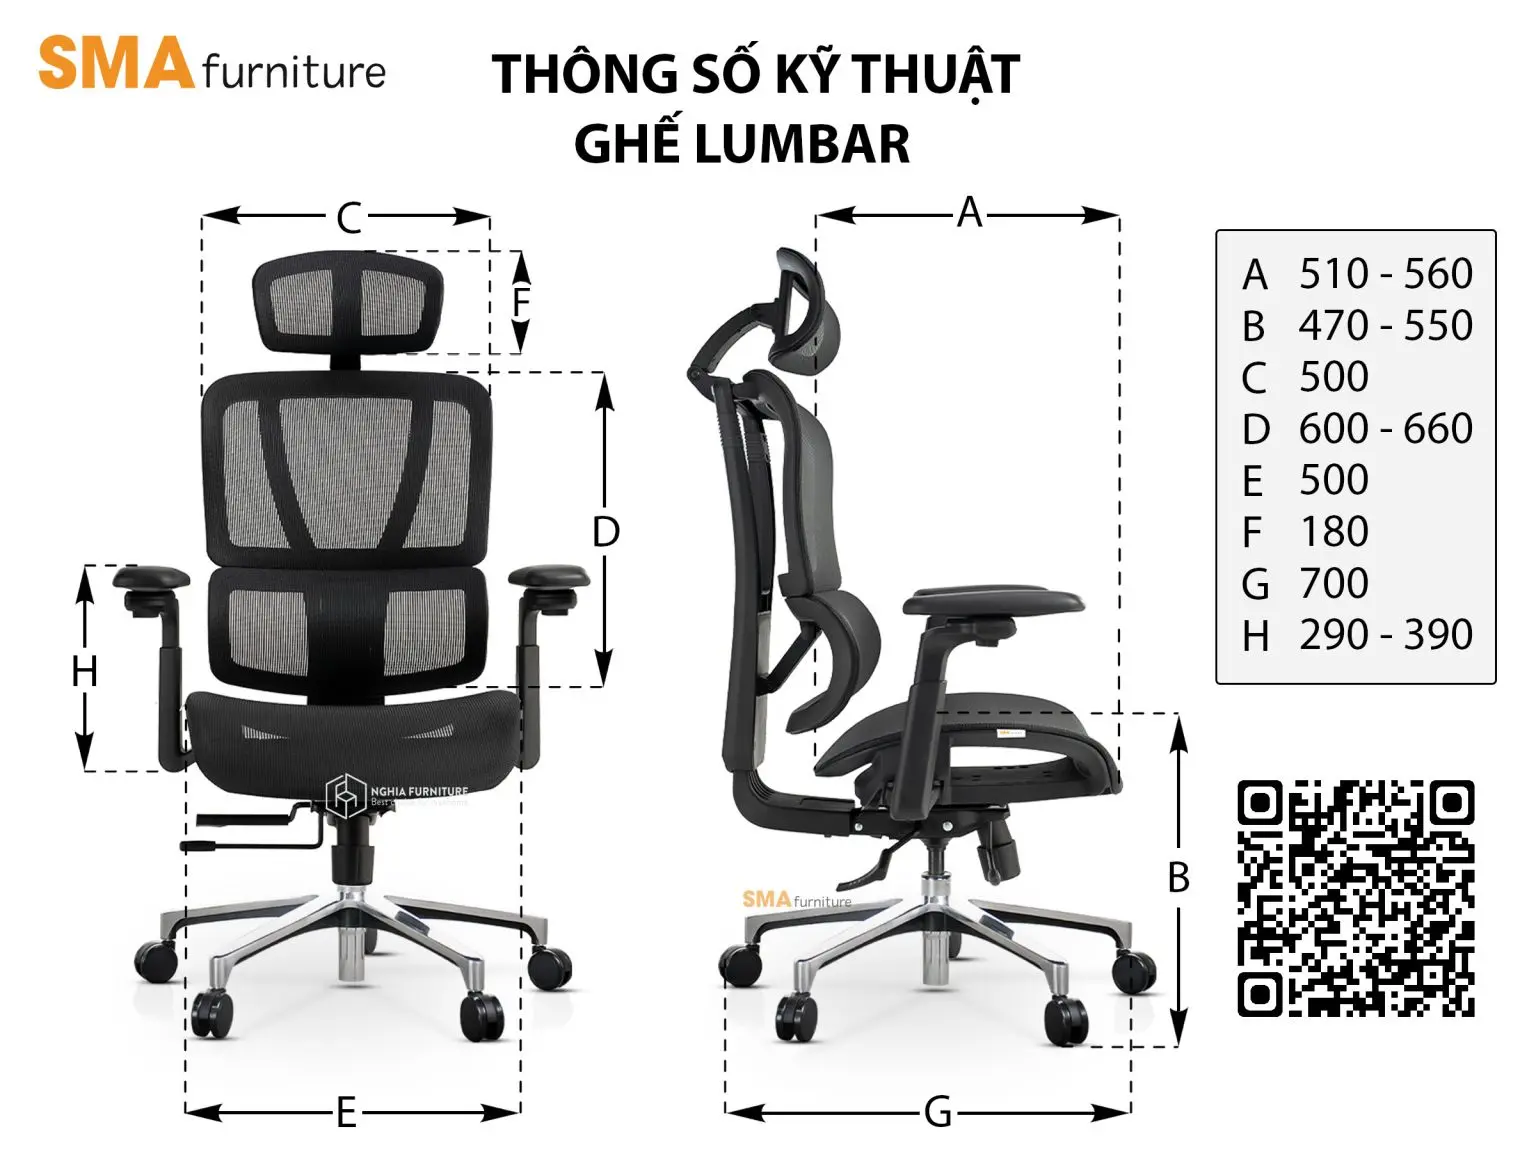 Thông số kỹ thuật của ghế Lumbar